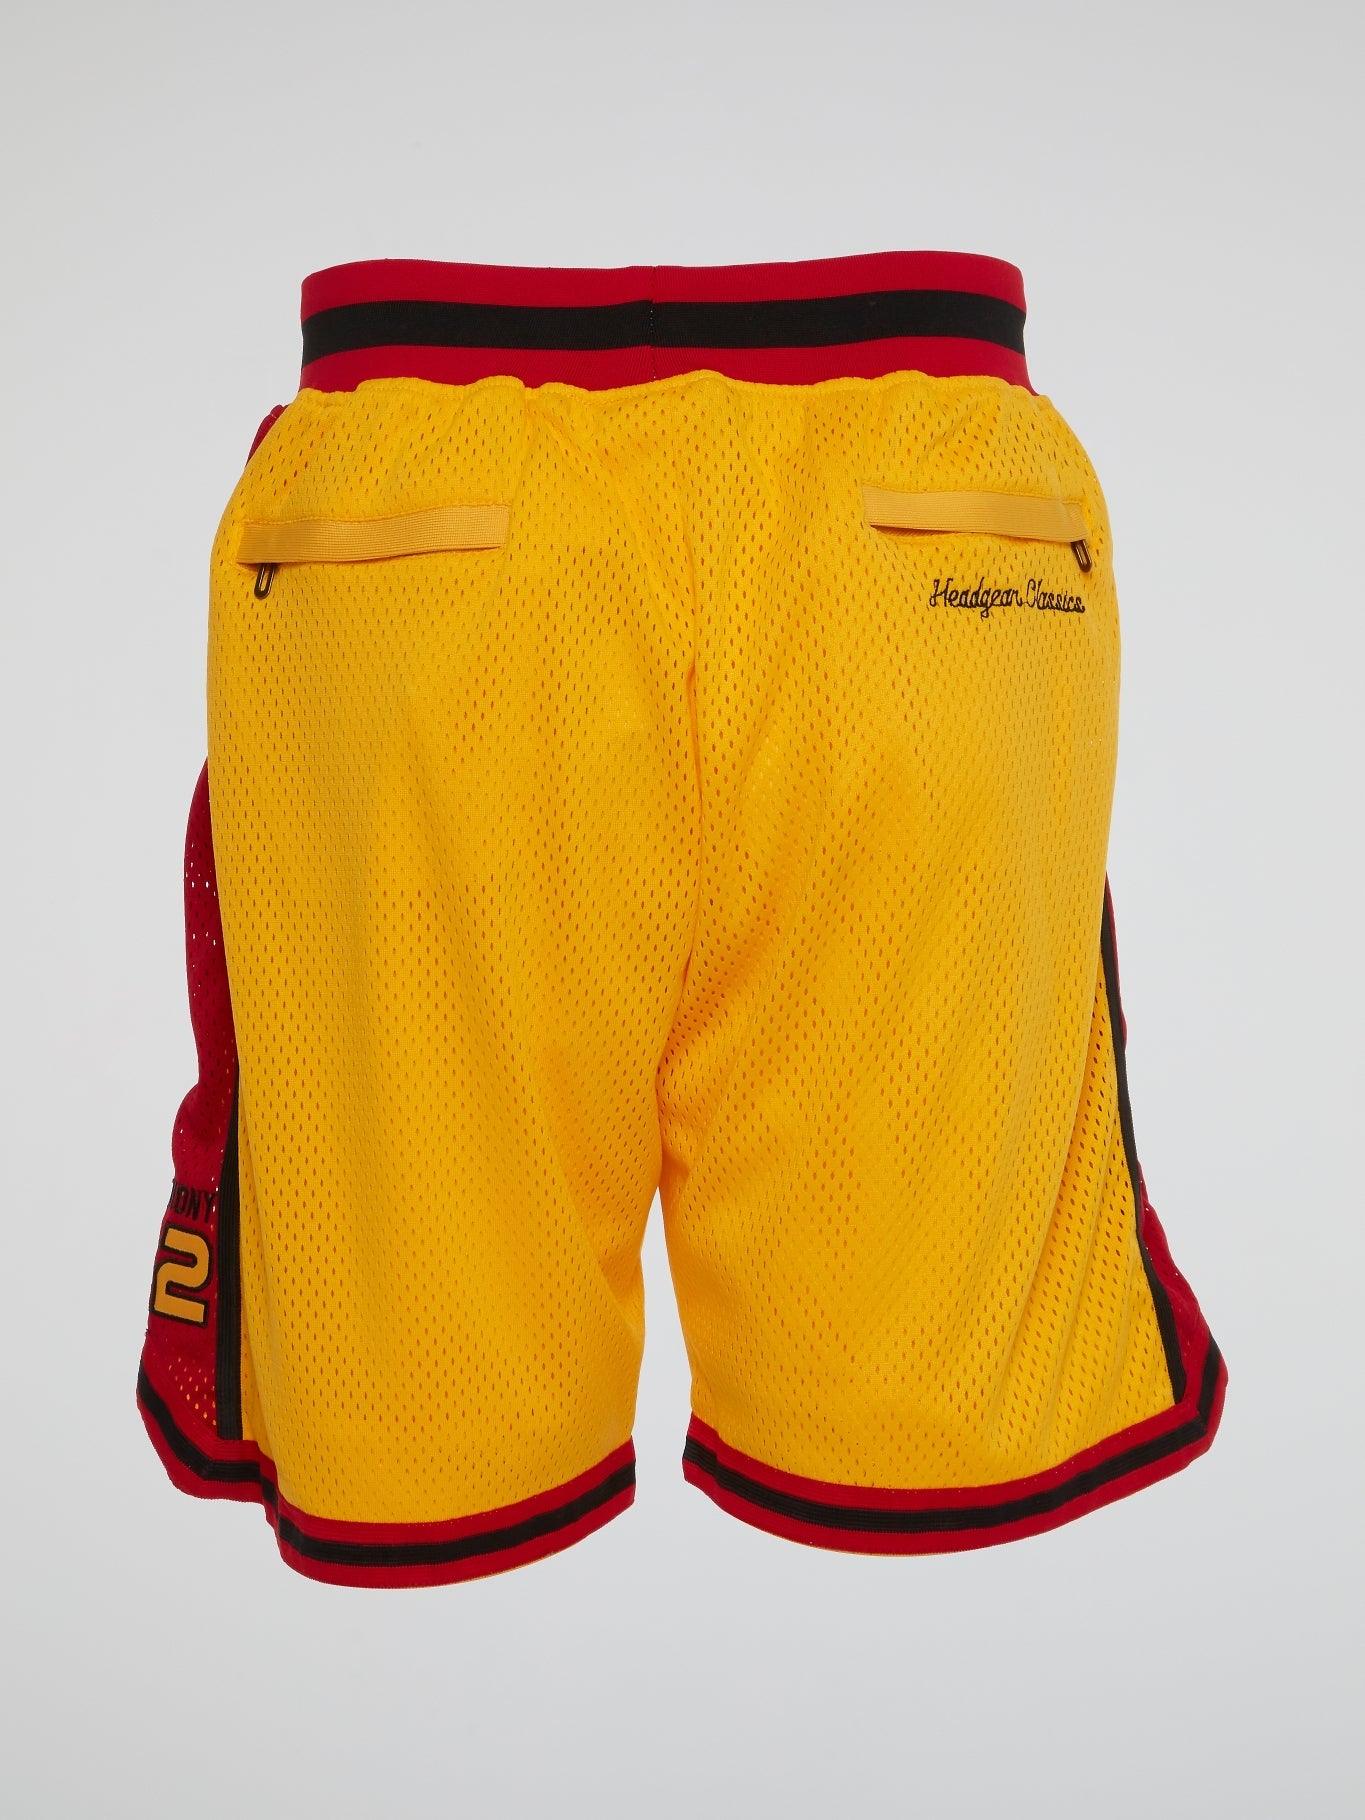 Carmelo Anthony Oak Hill Shorts - B-Hype Society